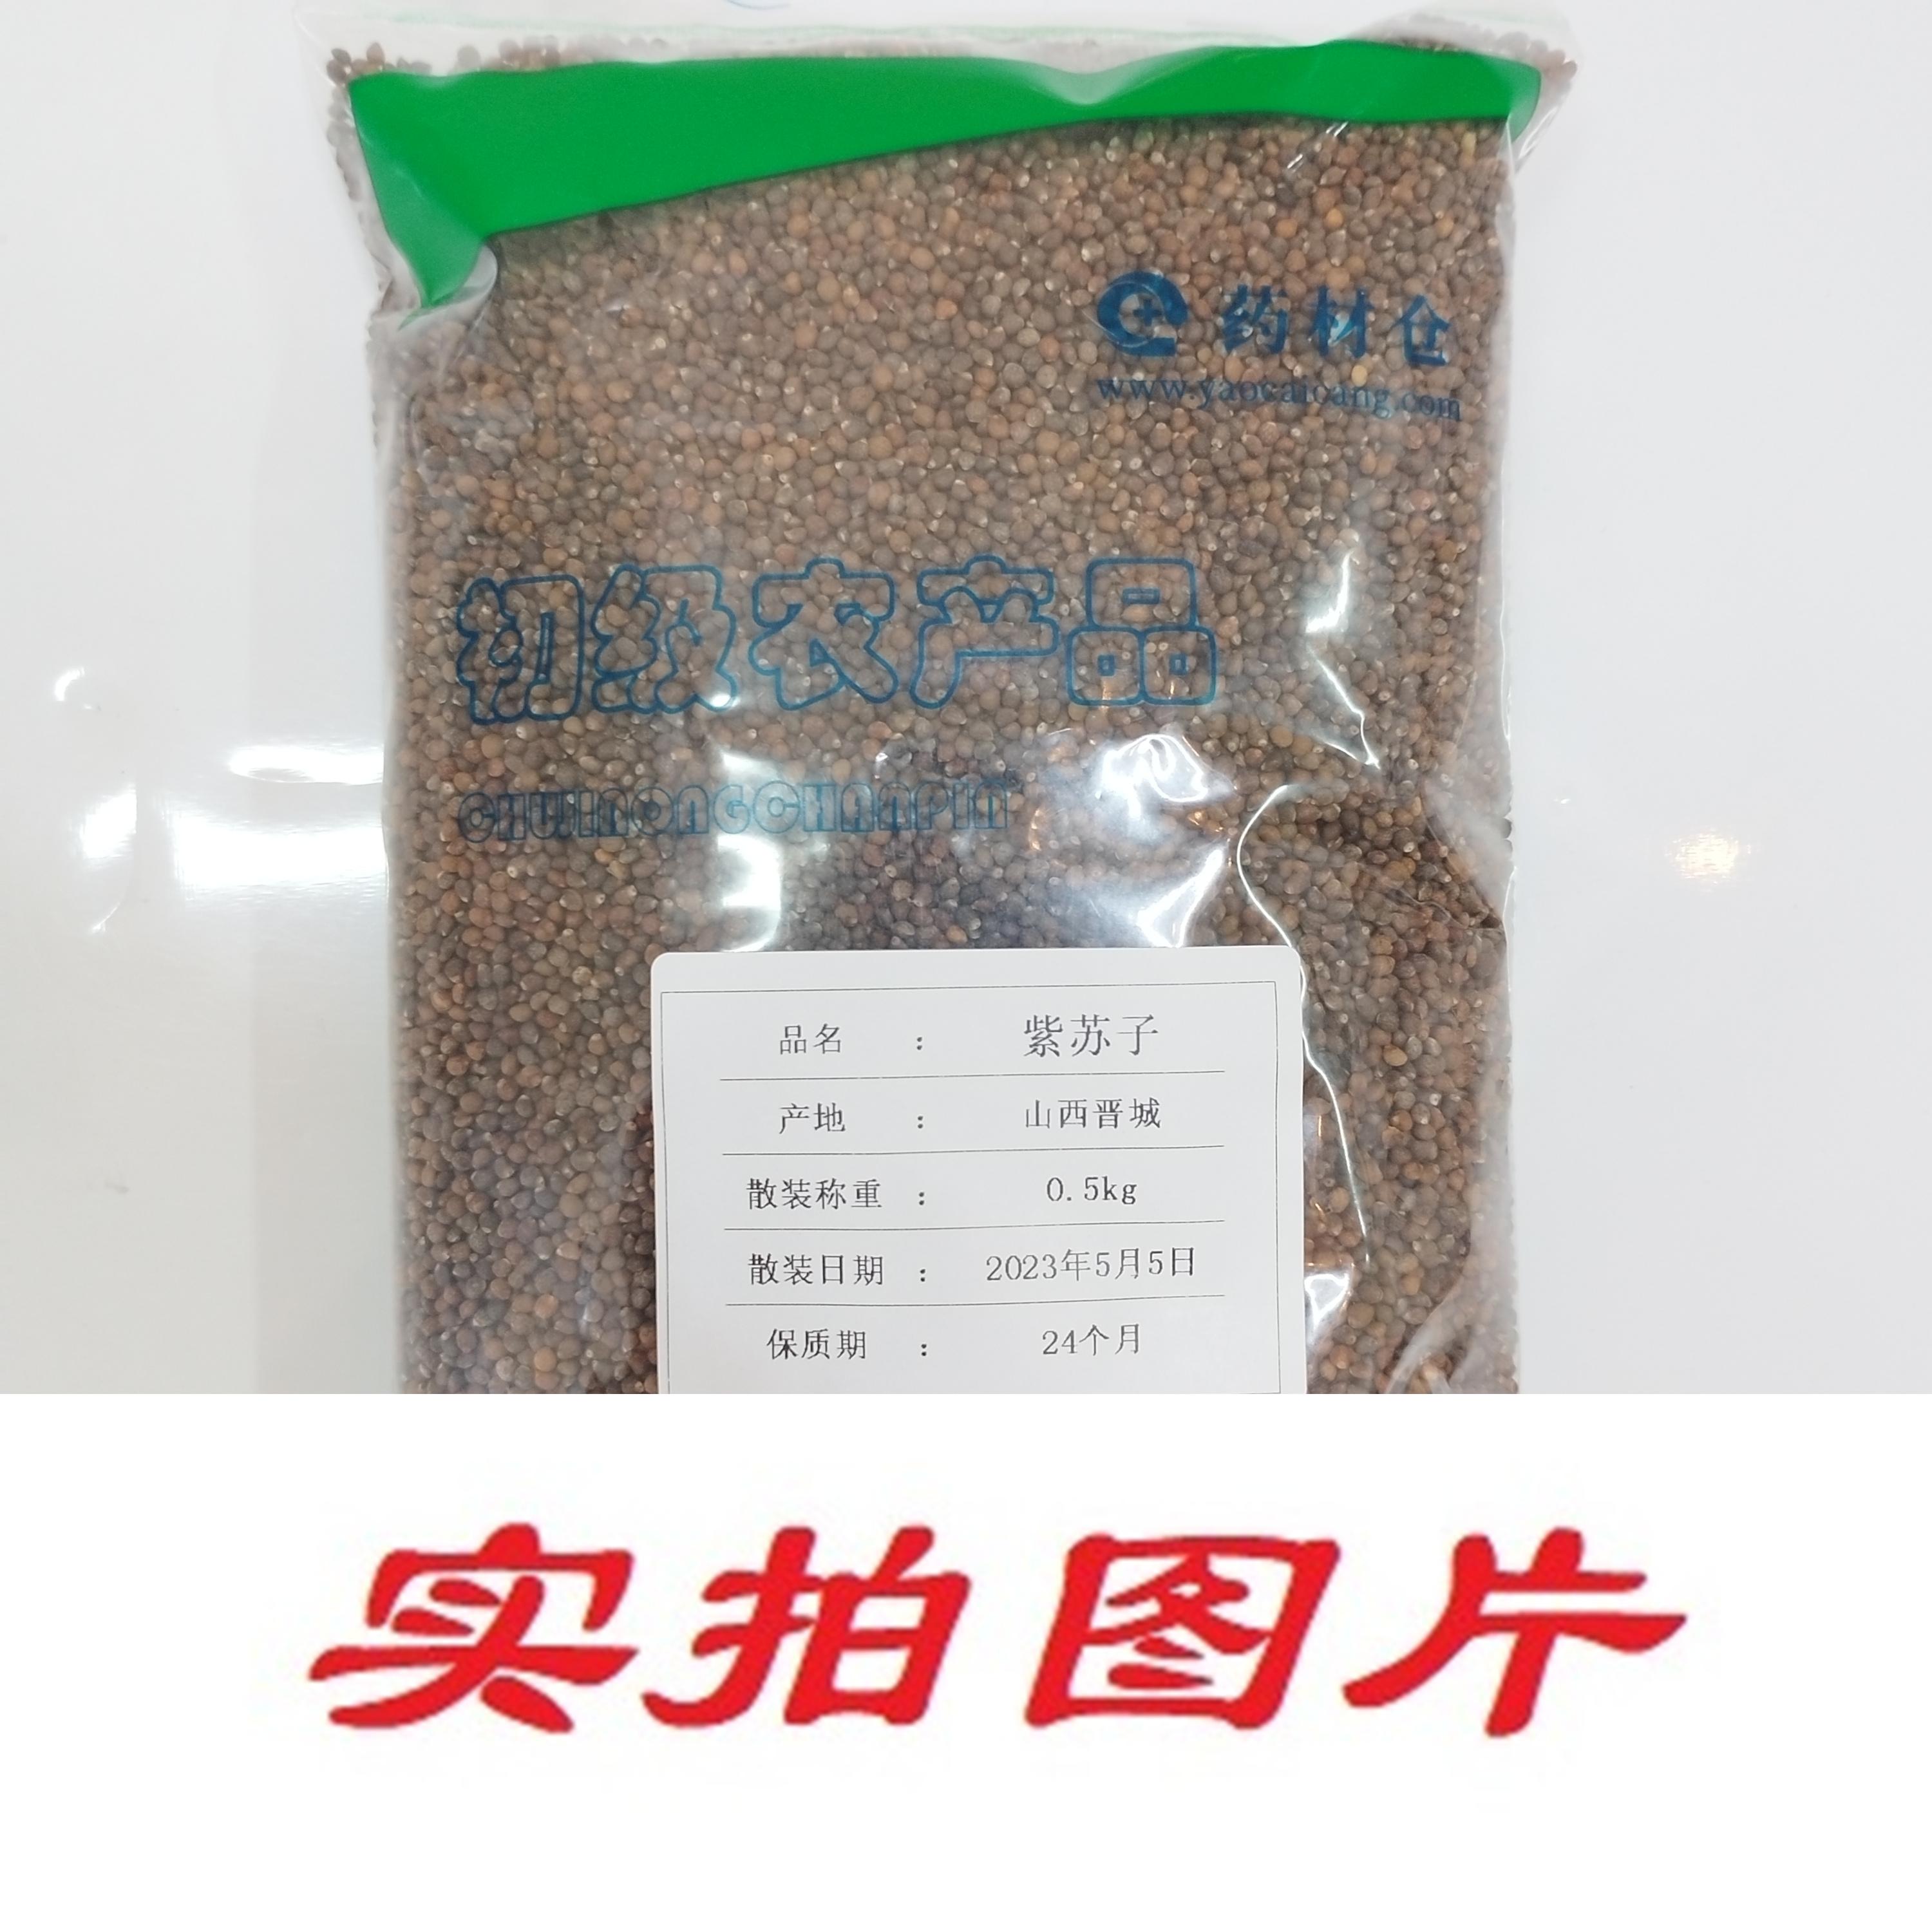 【】紫苏子0.5kg-农副产品